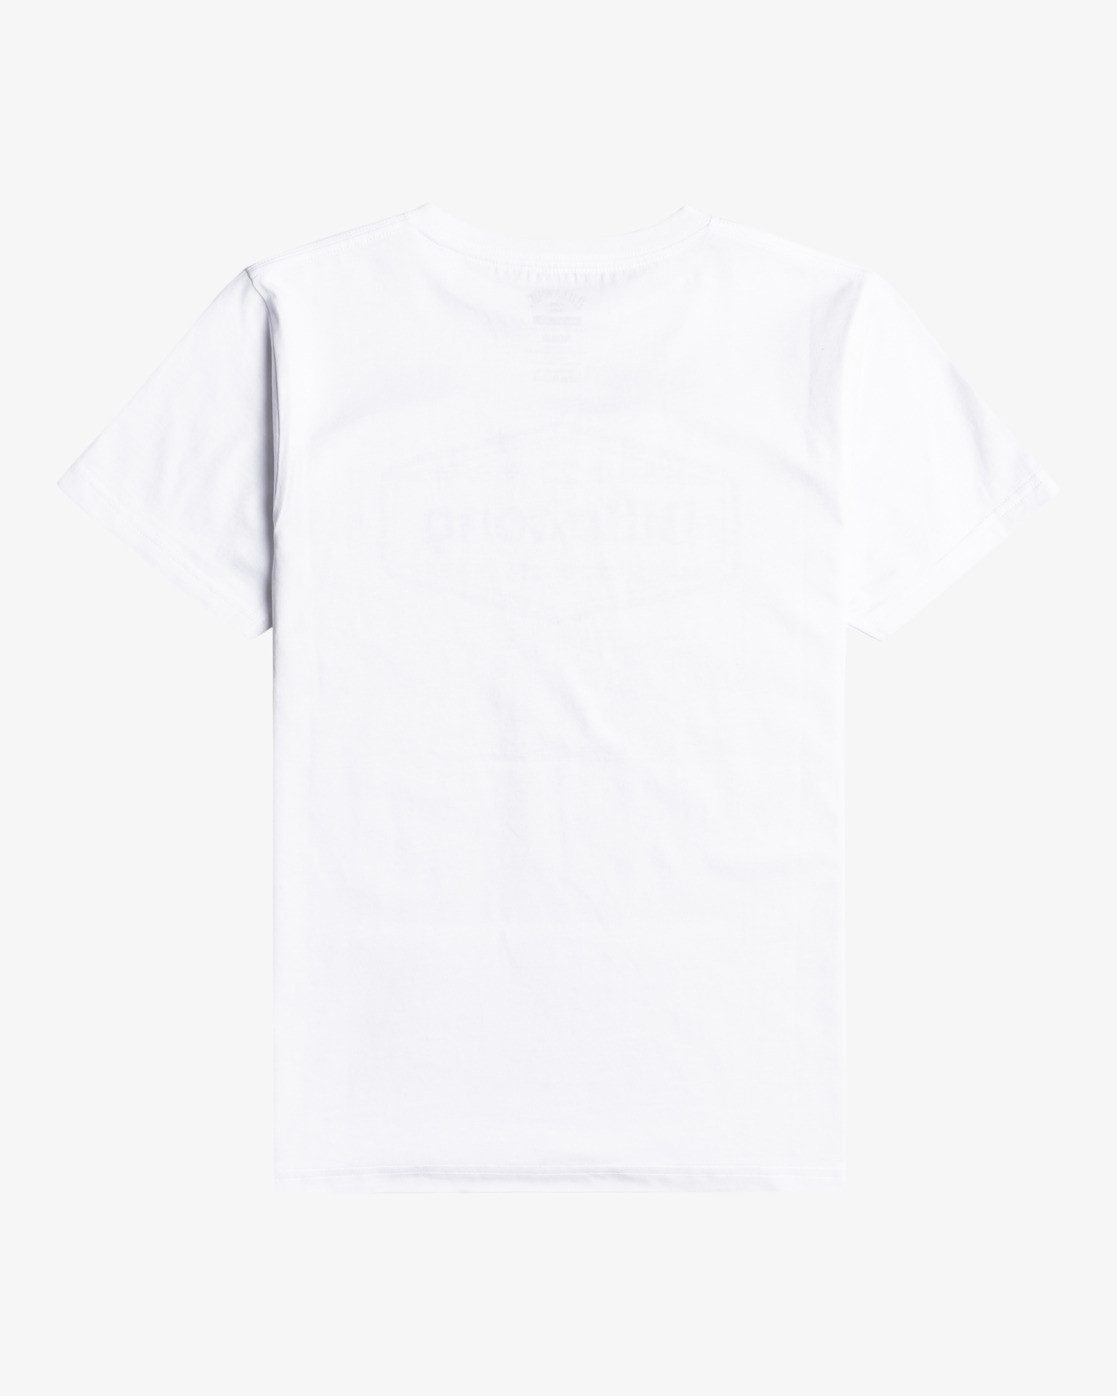 Billabong T-Shirt Trademark White